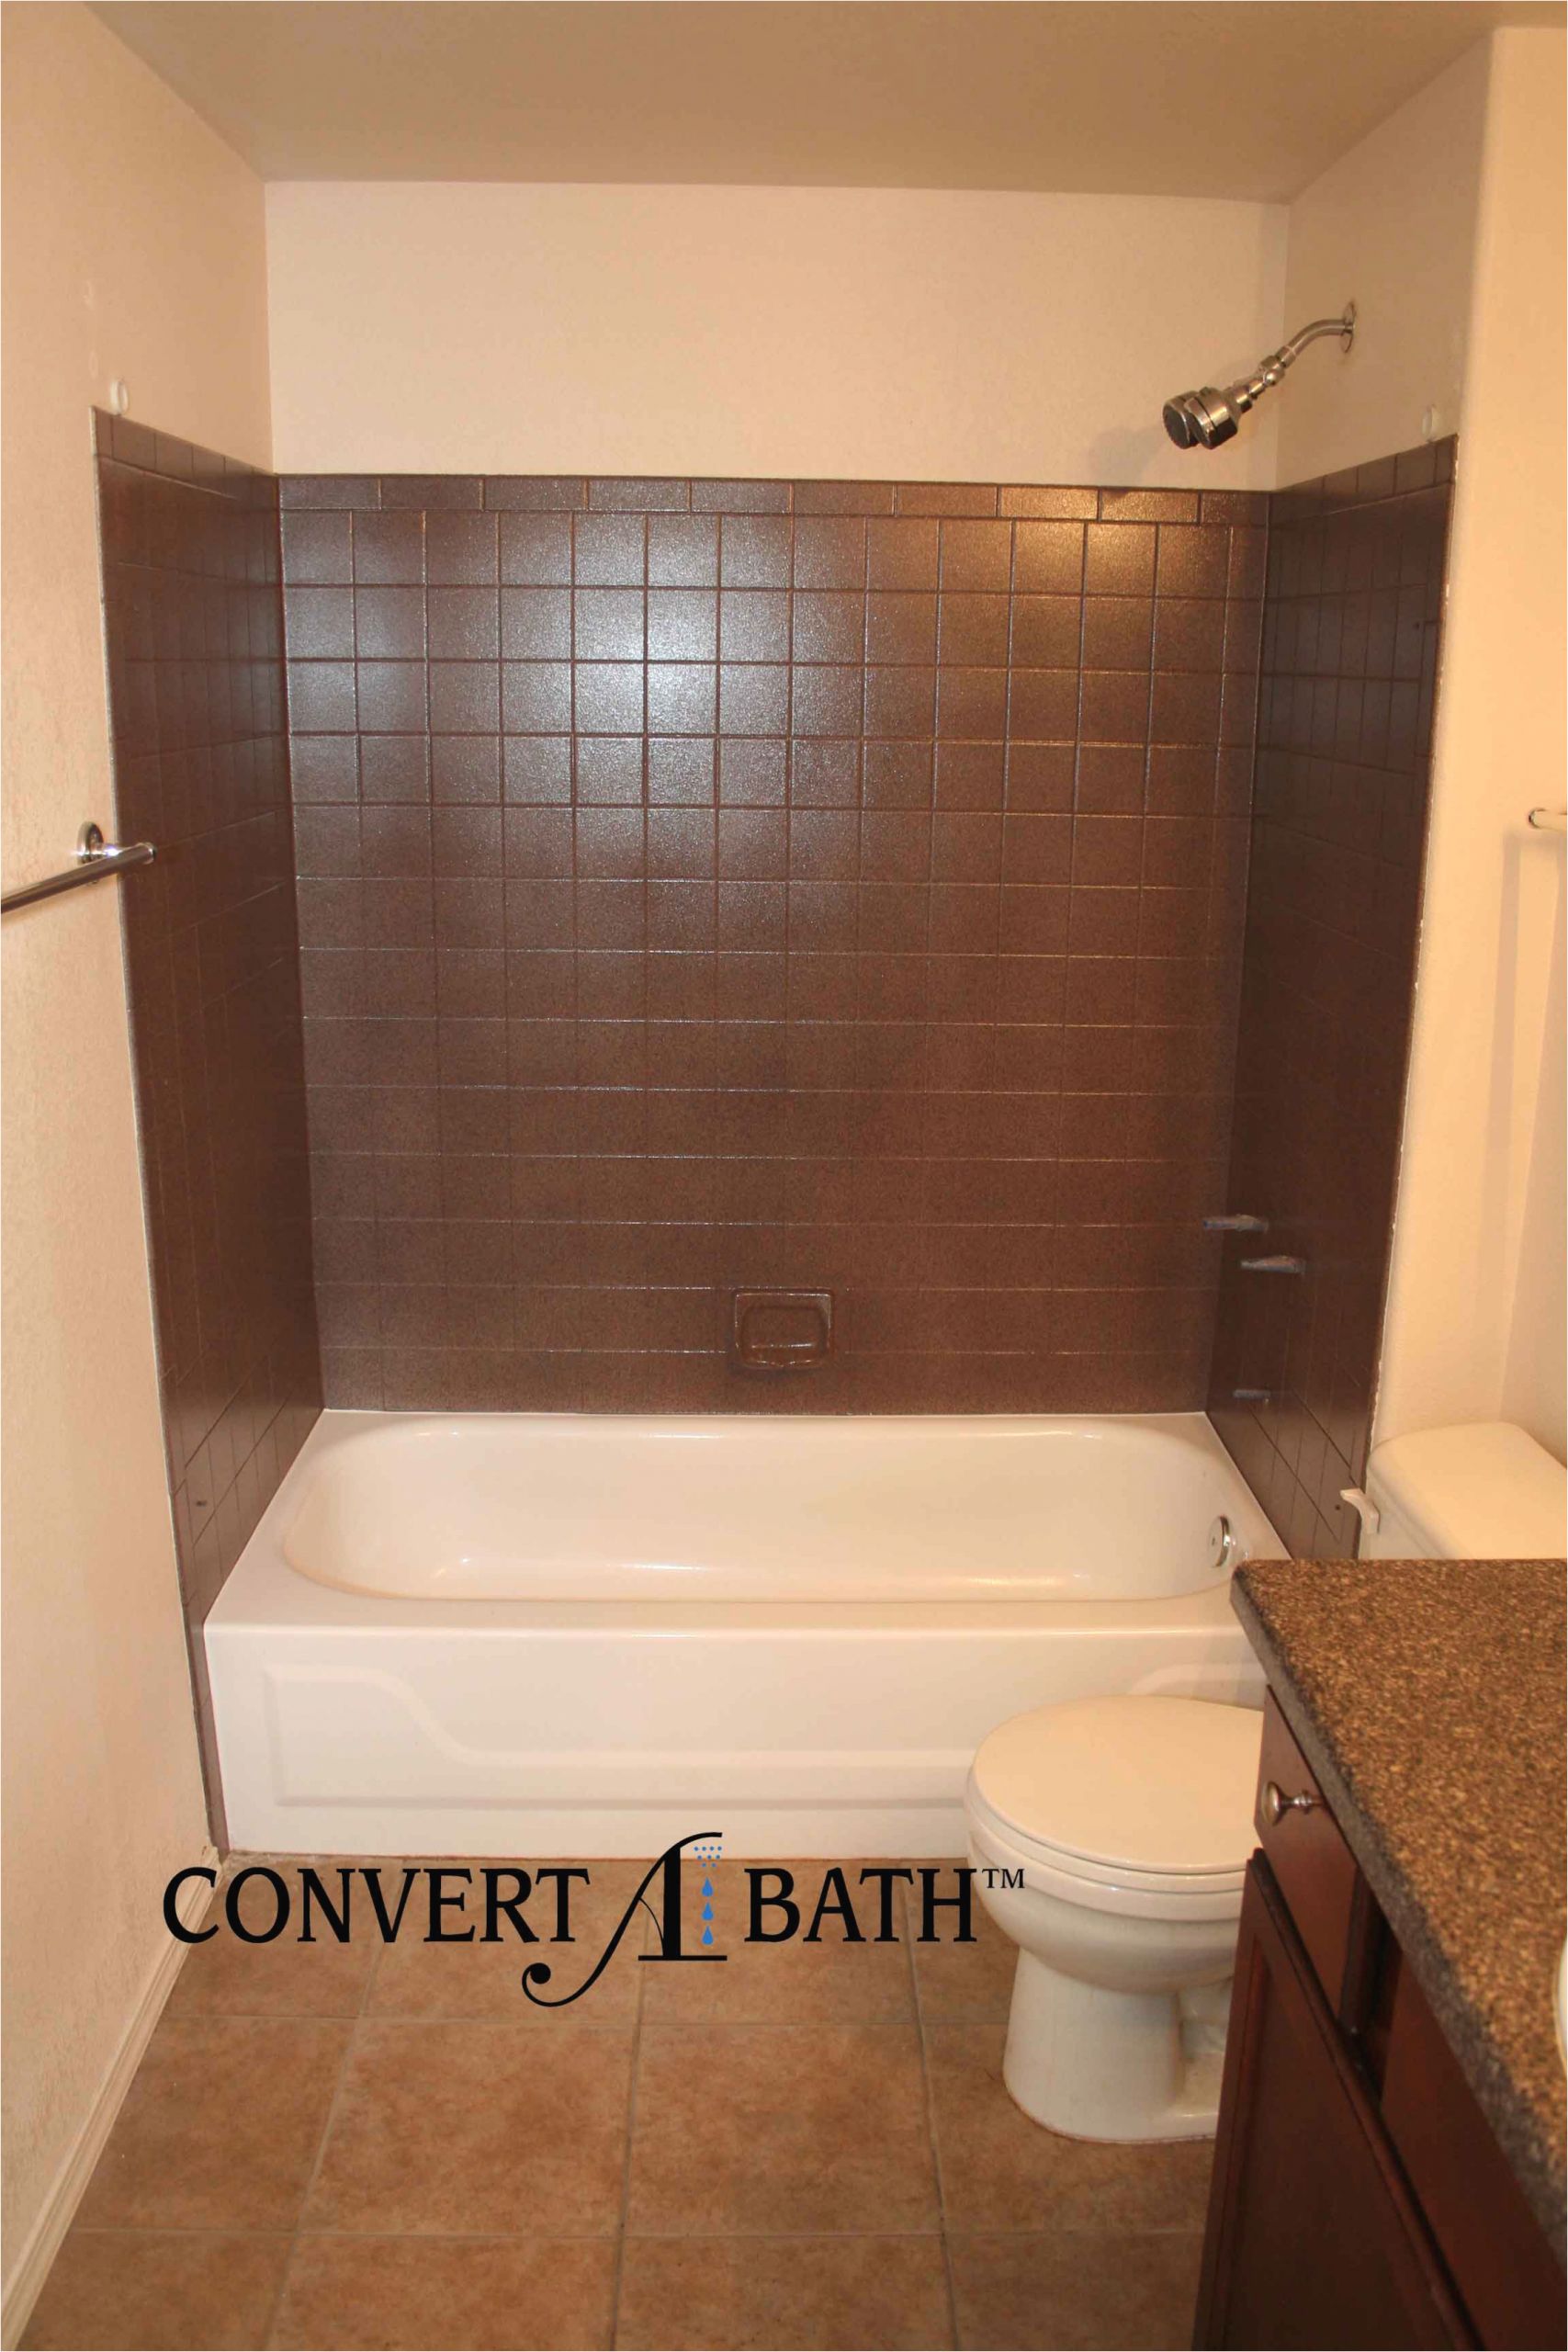 bathroom excellent bathtub surround tile images tile tub regarding faux tile tub surround